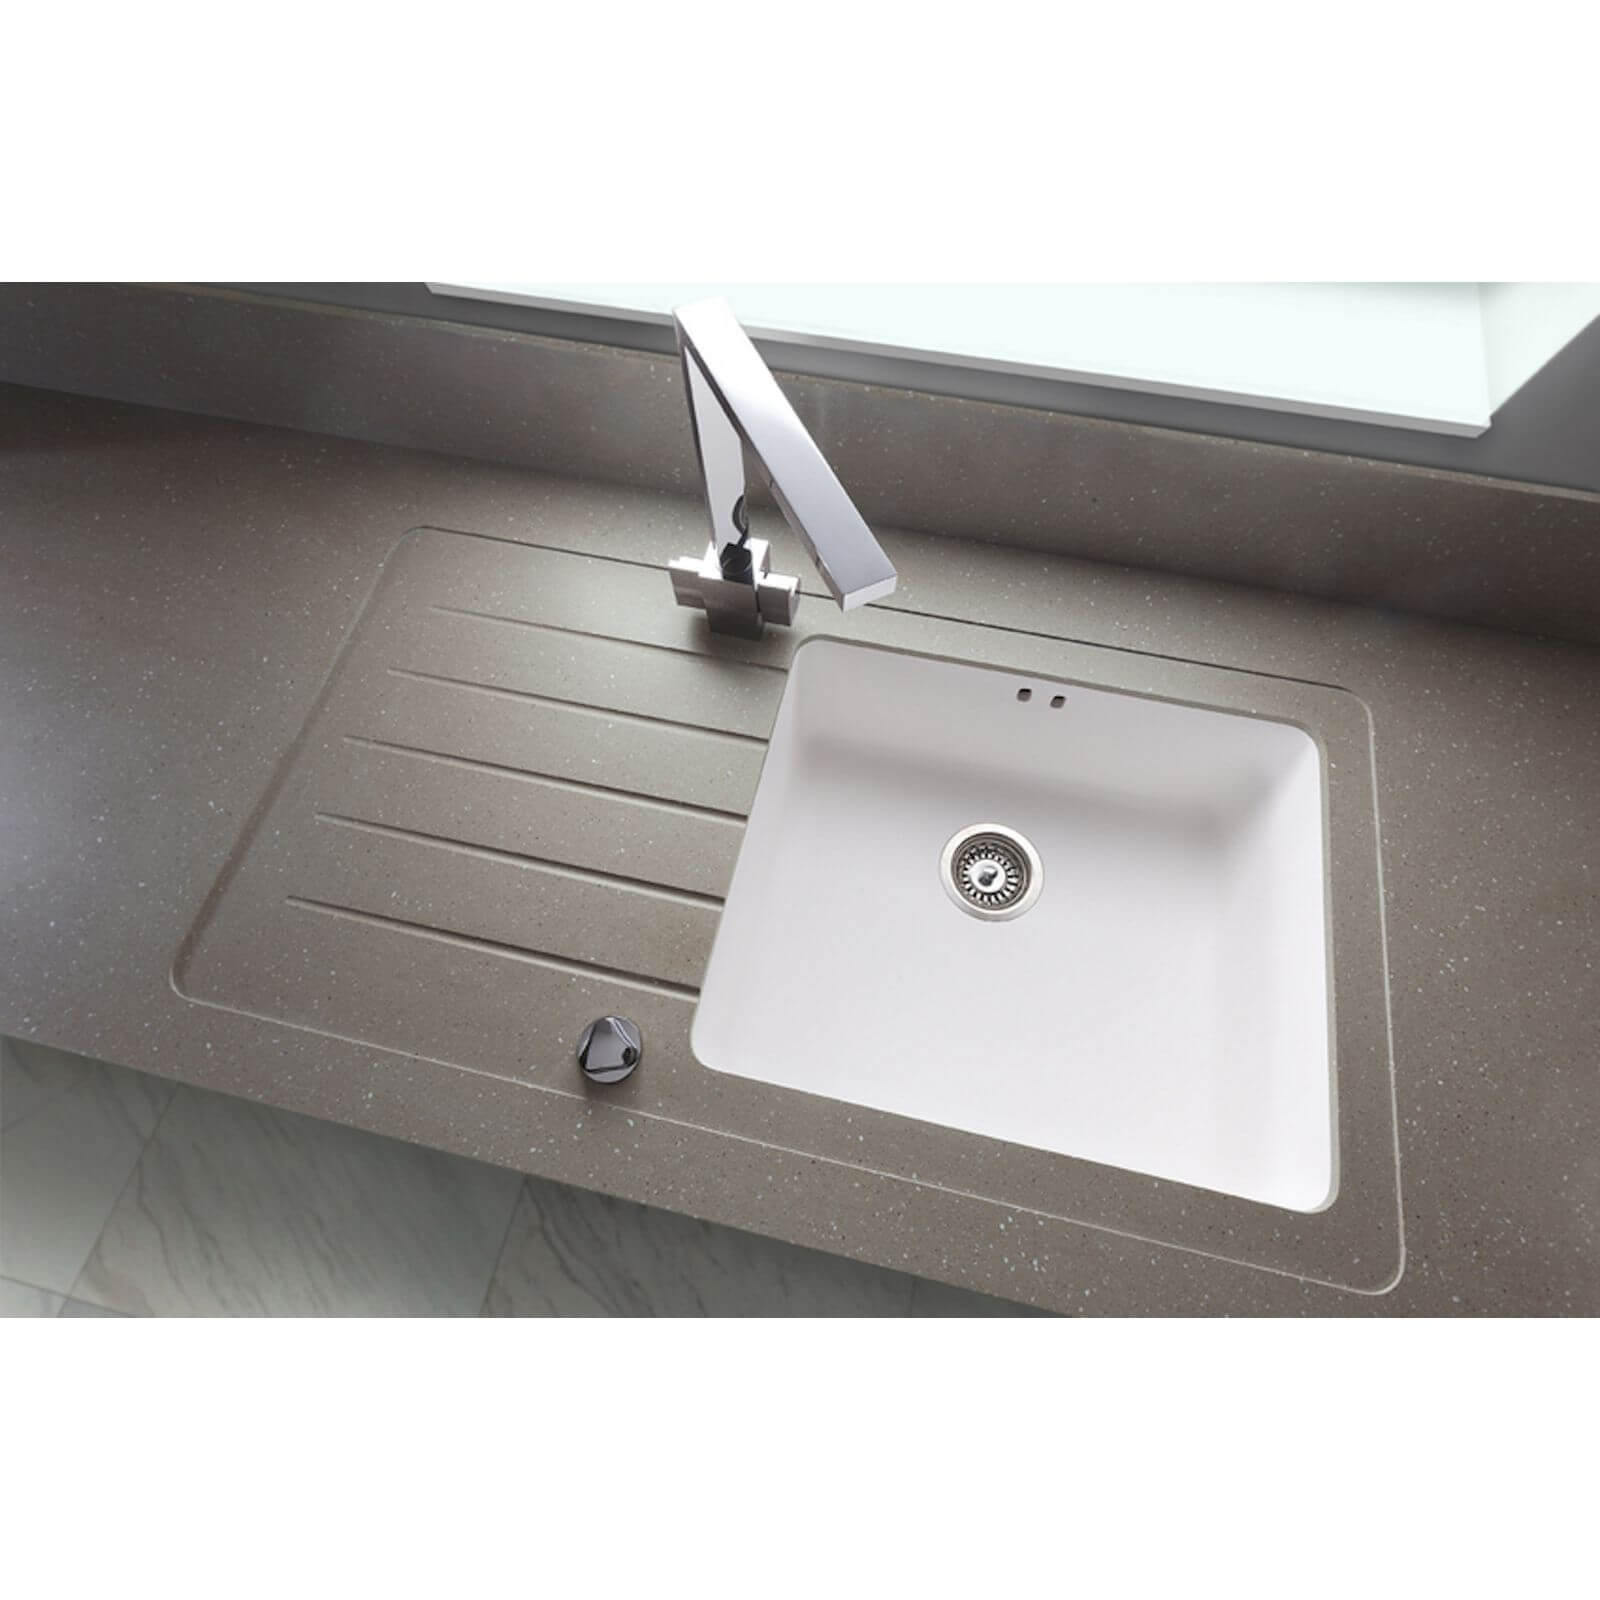 Maia Brazilian Greige Kitchen Sink Worktop - 1.5 Designer Right Hand Bowl - 1800 x 650 x 28mm